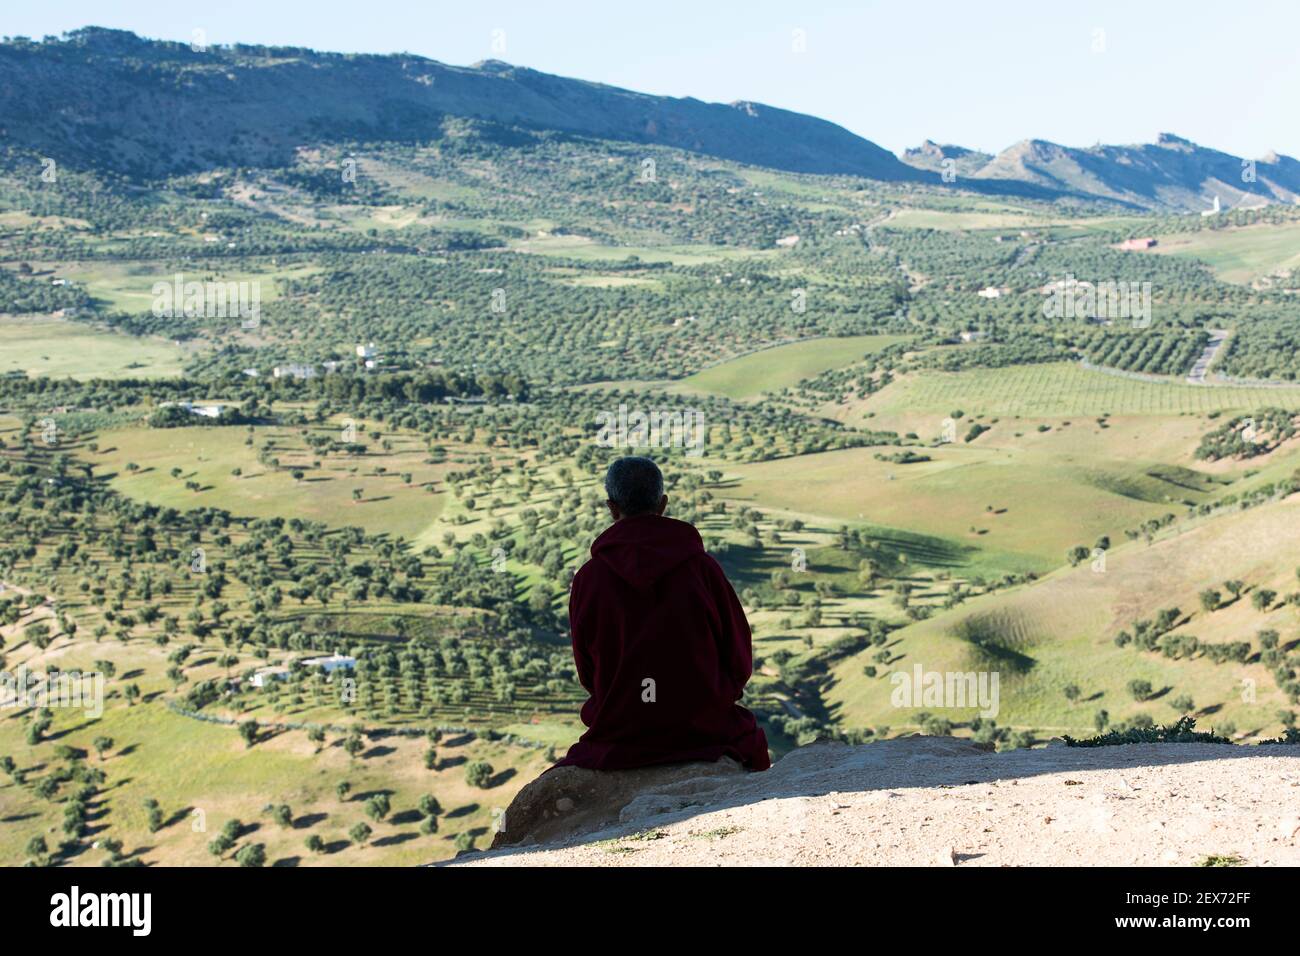 Maroc, Fès, silhouette d'une personne qui donne sur le paysage des collines verdoyantes entourant la ville Banque D'Images